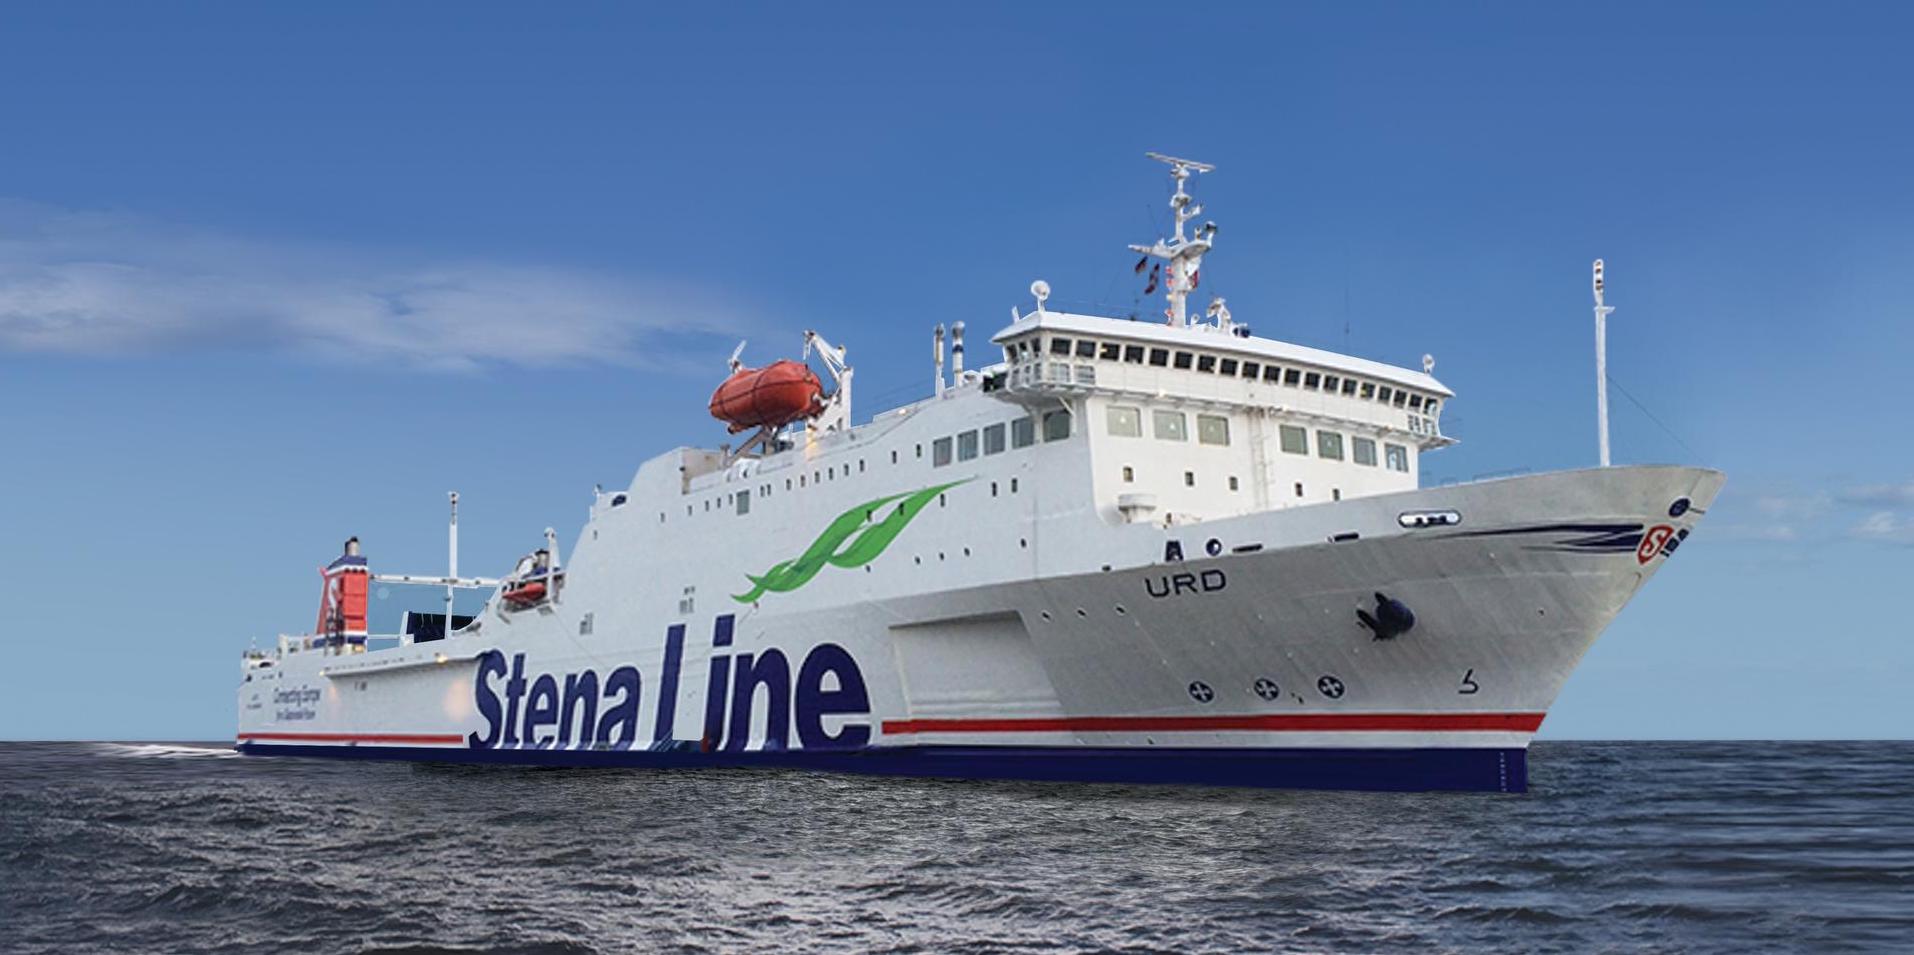 Foto av Stena Line - Urd skepp